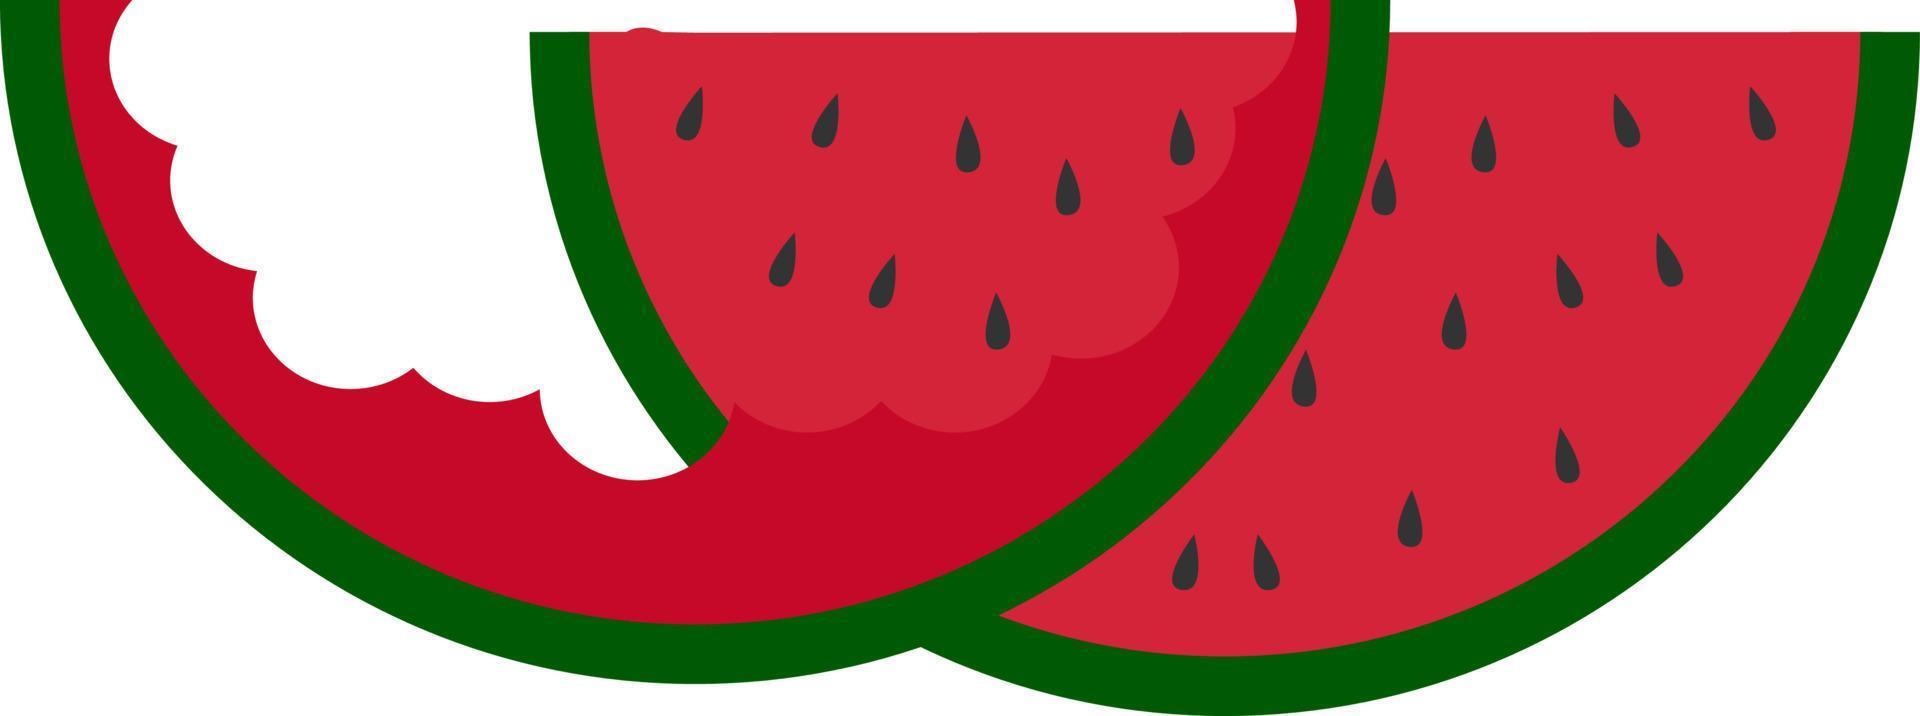 uppäten vattenmelon, illustration, vektor på vit bakgrund